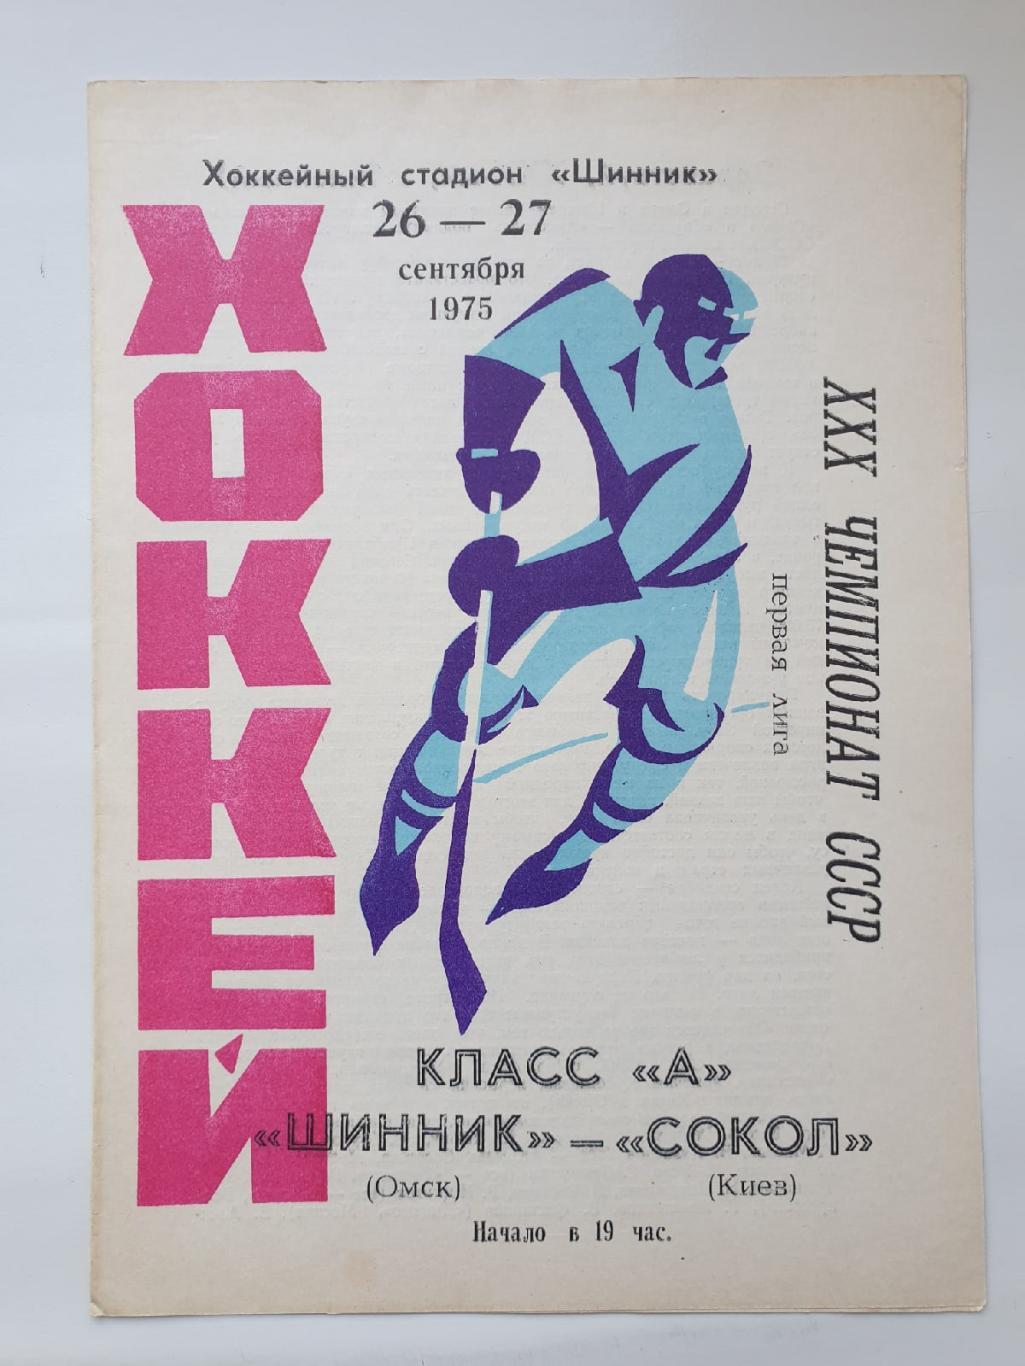 Шинник Омск - Сокол Киев 26/27 сентября 1975